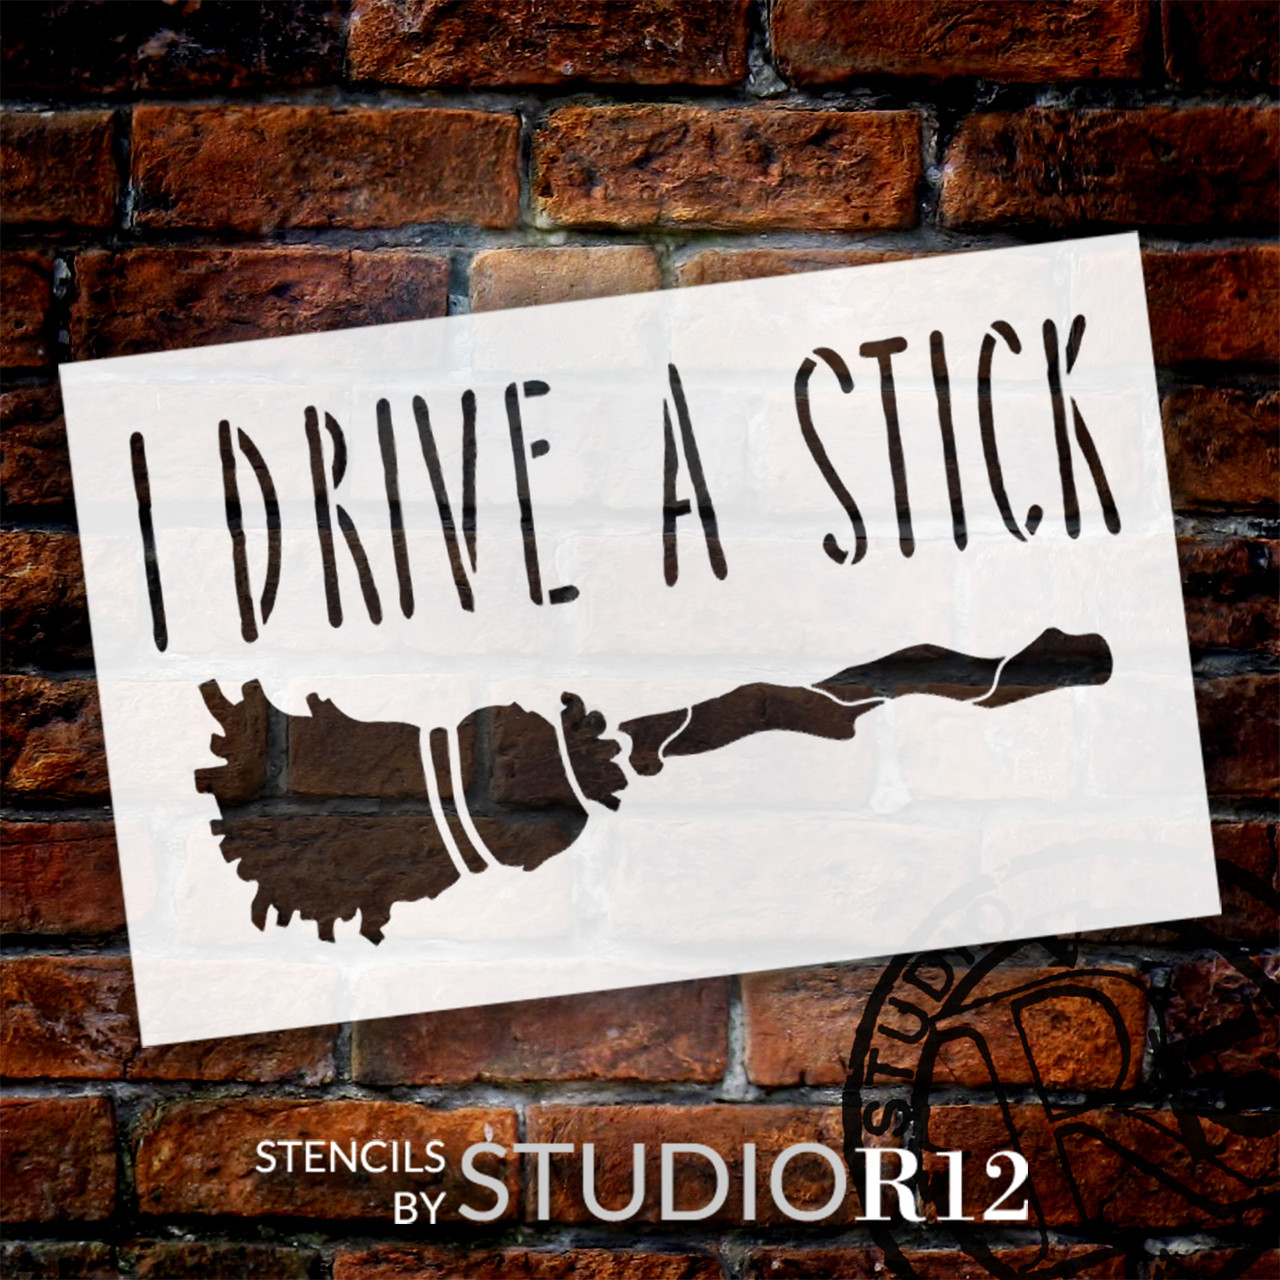 I Drive a Stick - Word Art Stencil - 14" x 9" - STCL1227_2 by StudioR12